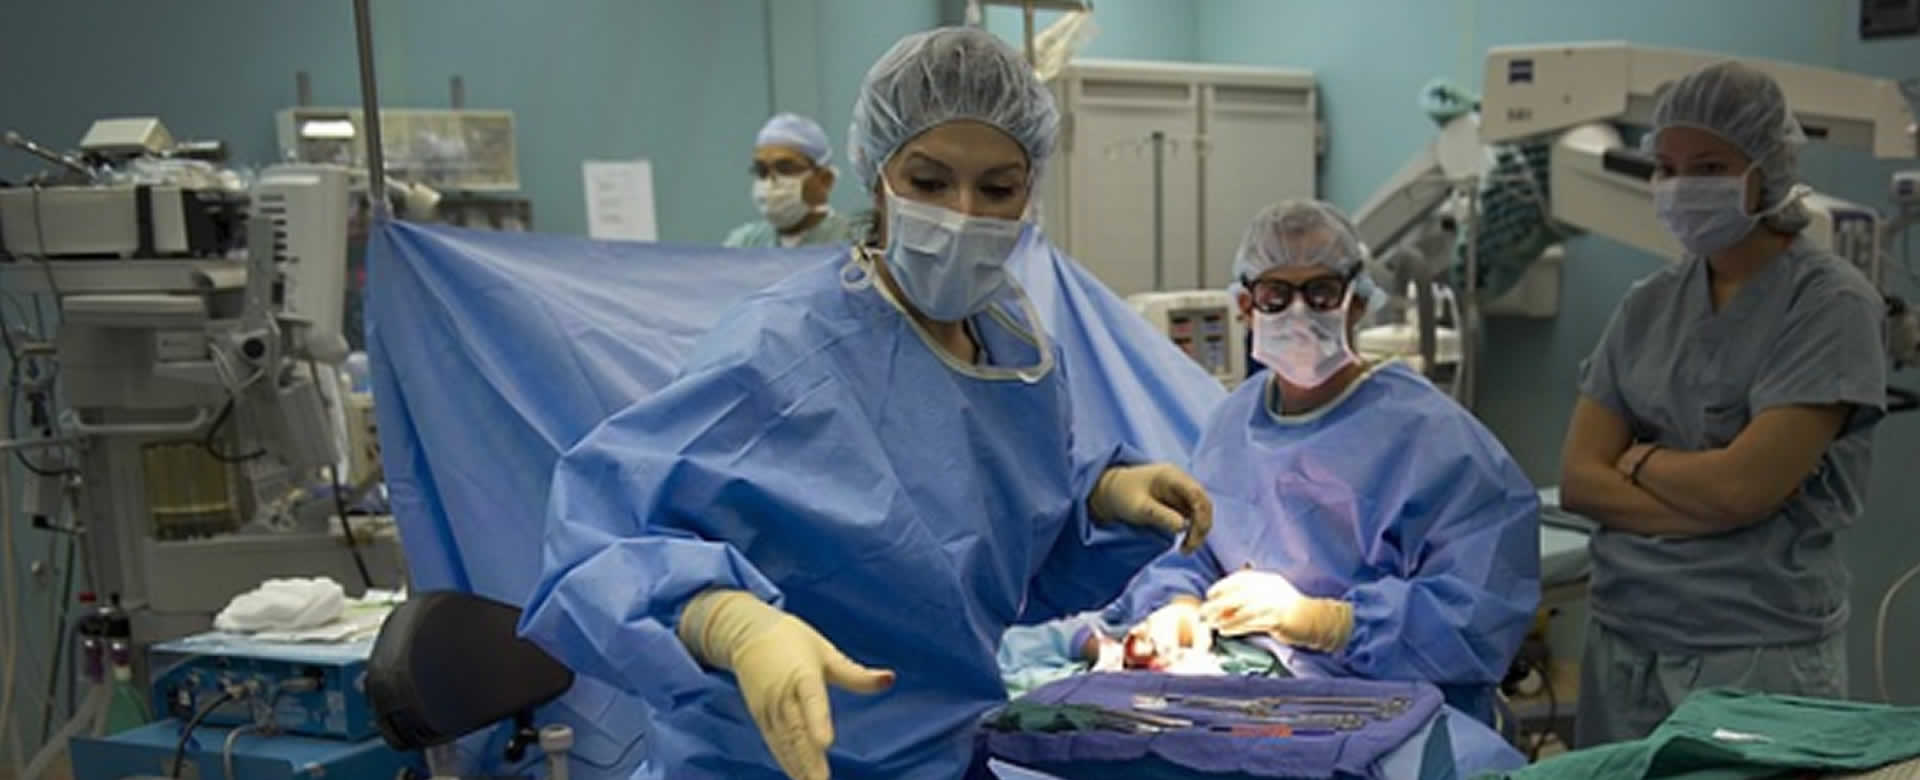 Australiano de 60 años se le prende en fuego el pecho durante operación quirúrgica